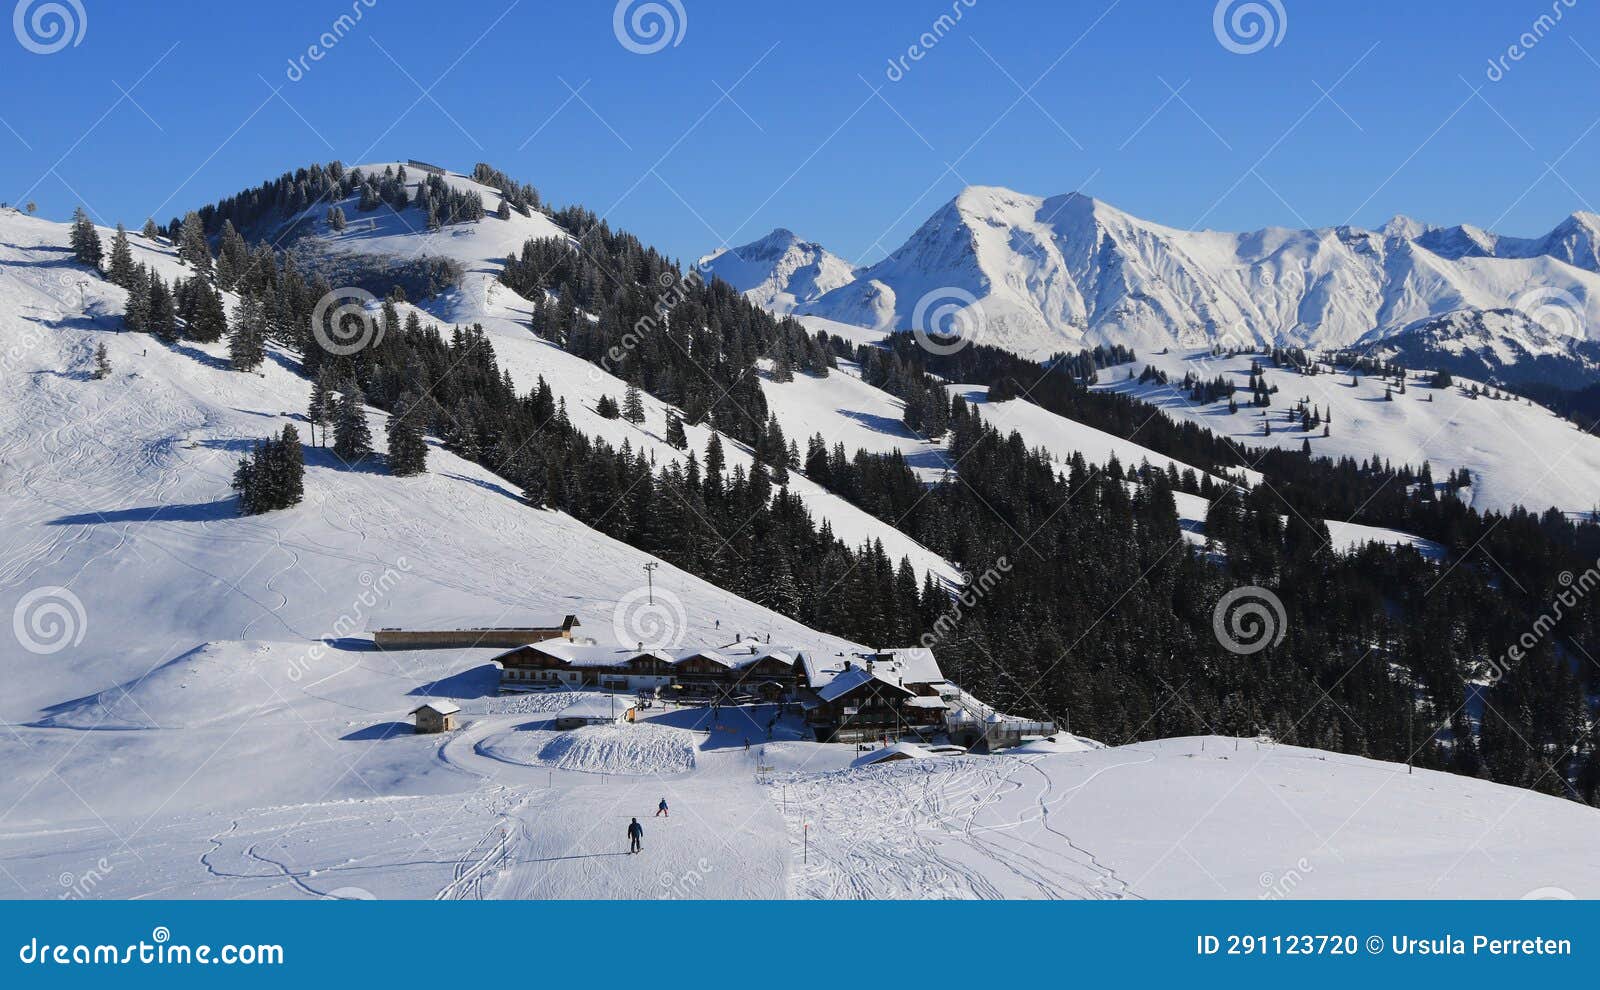 horneggli berghaus and ski slopes.